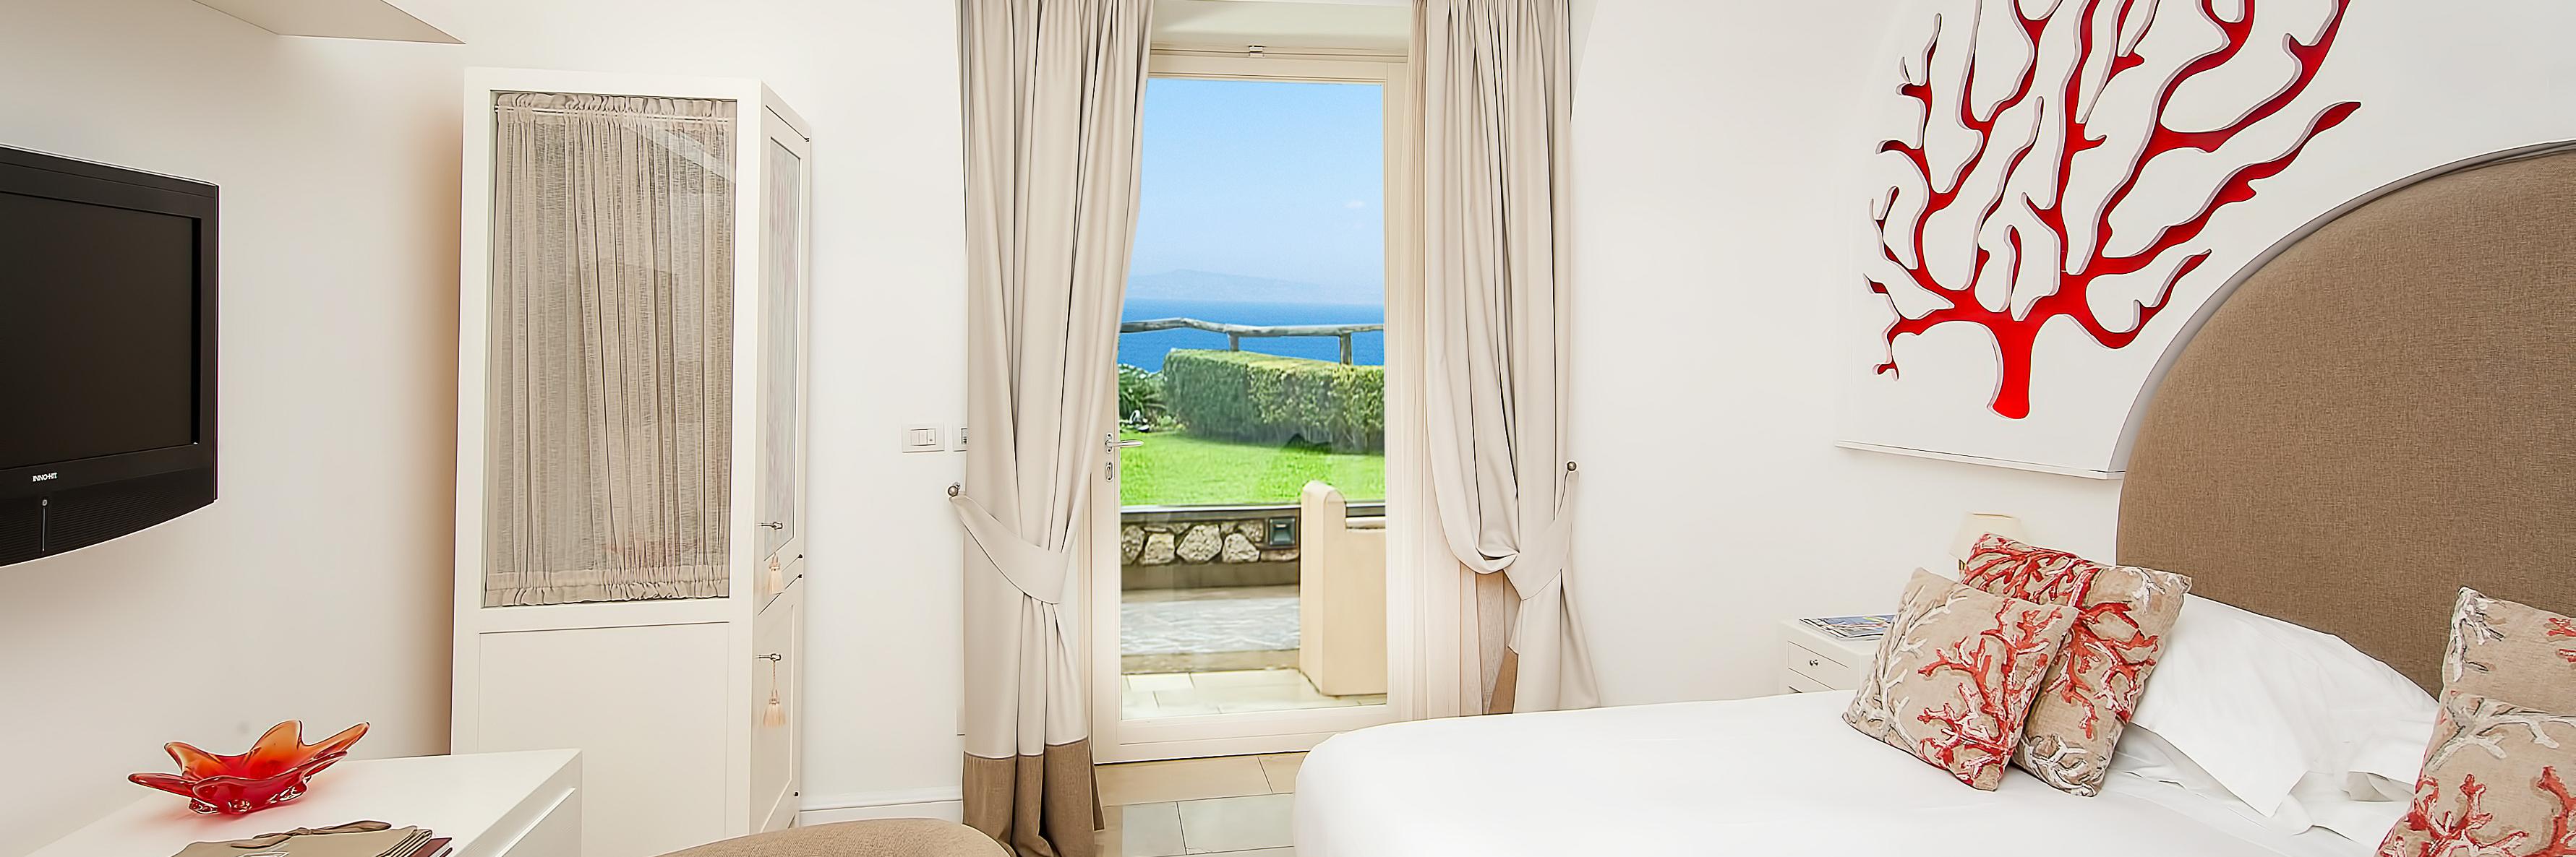 Villa Marina Capri Hotel and Spa, in Capri, Italy - Preferred